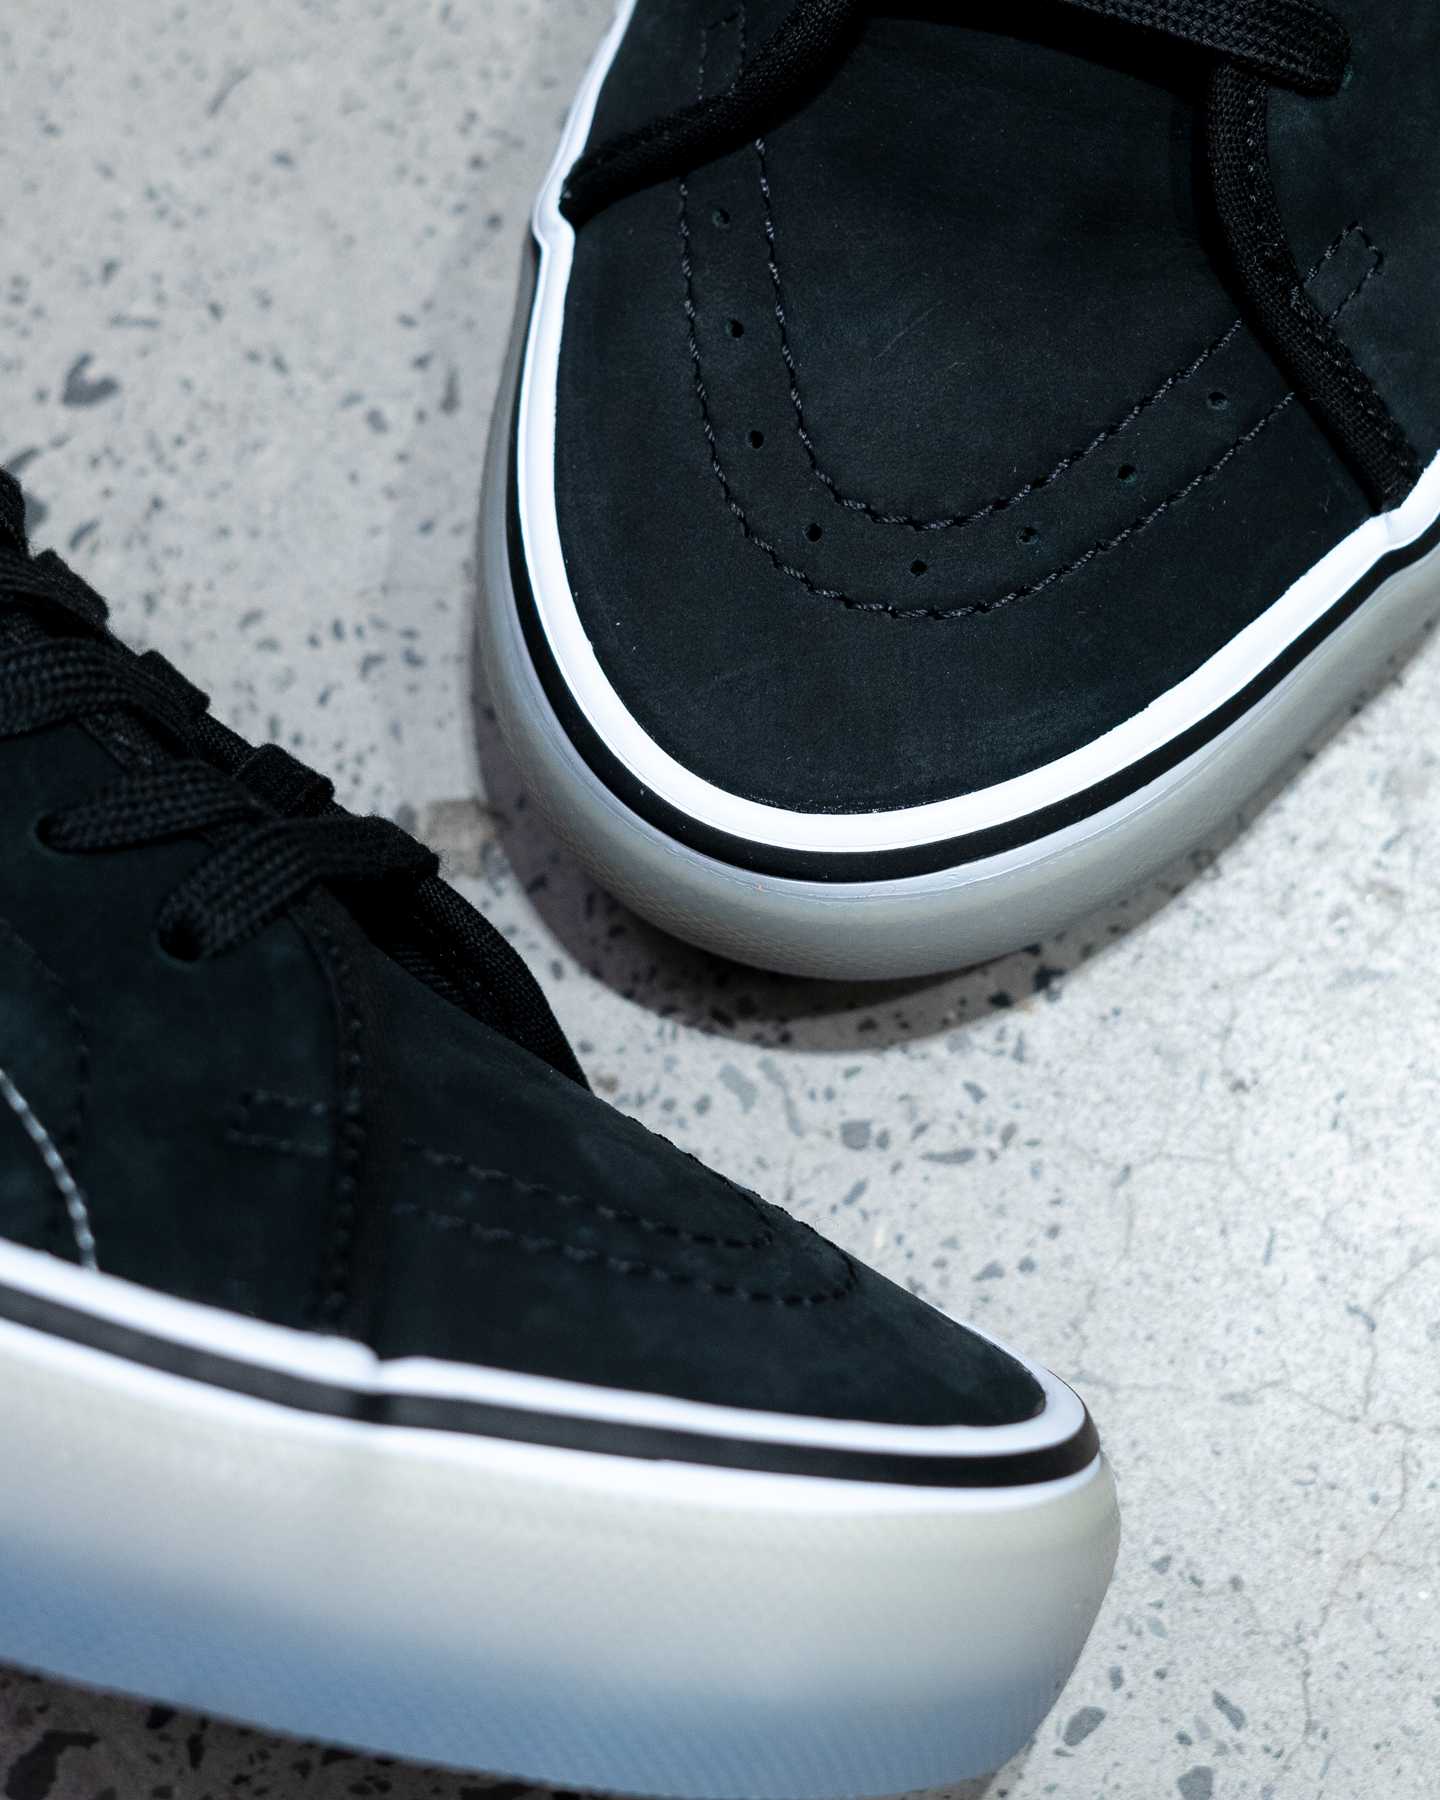 toe area on black and white vans av shoe